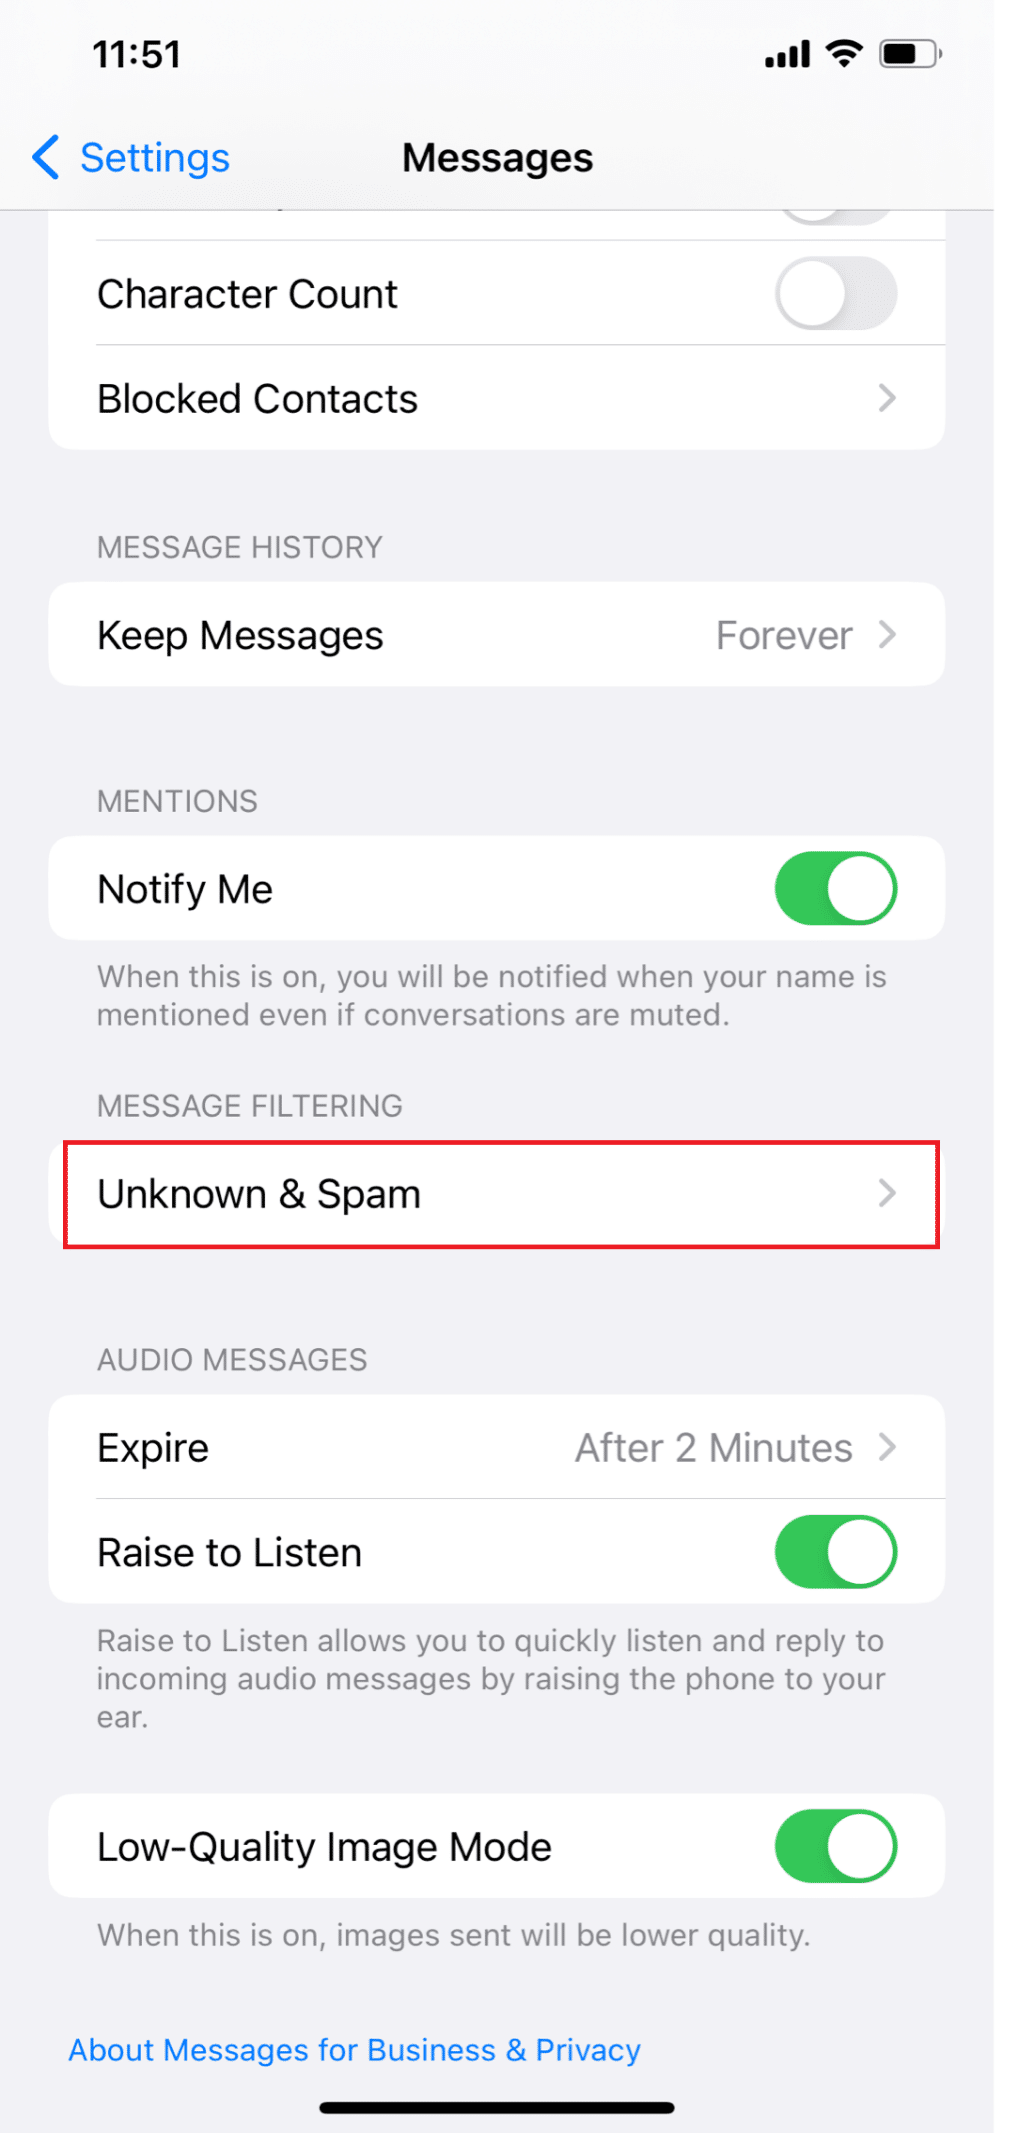 Scrollen Sie nun nach unten und tippen Sie auf Unbekannt & Spam | Der Benachrichtigungston für iOS 15 funktioniert nicht